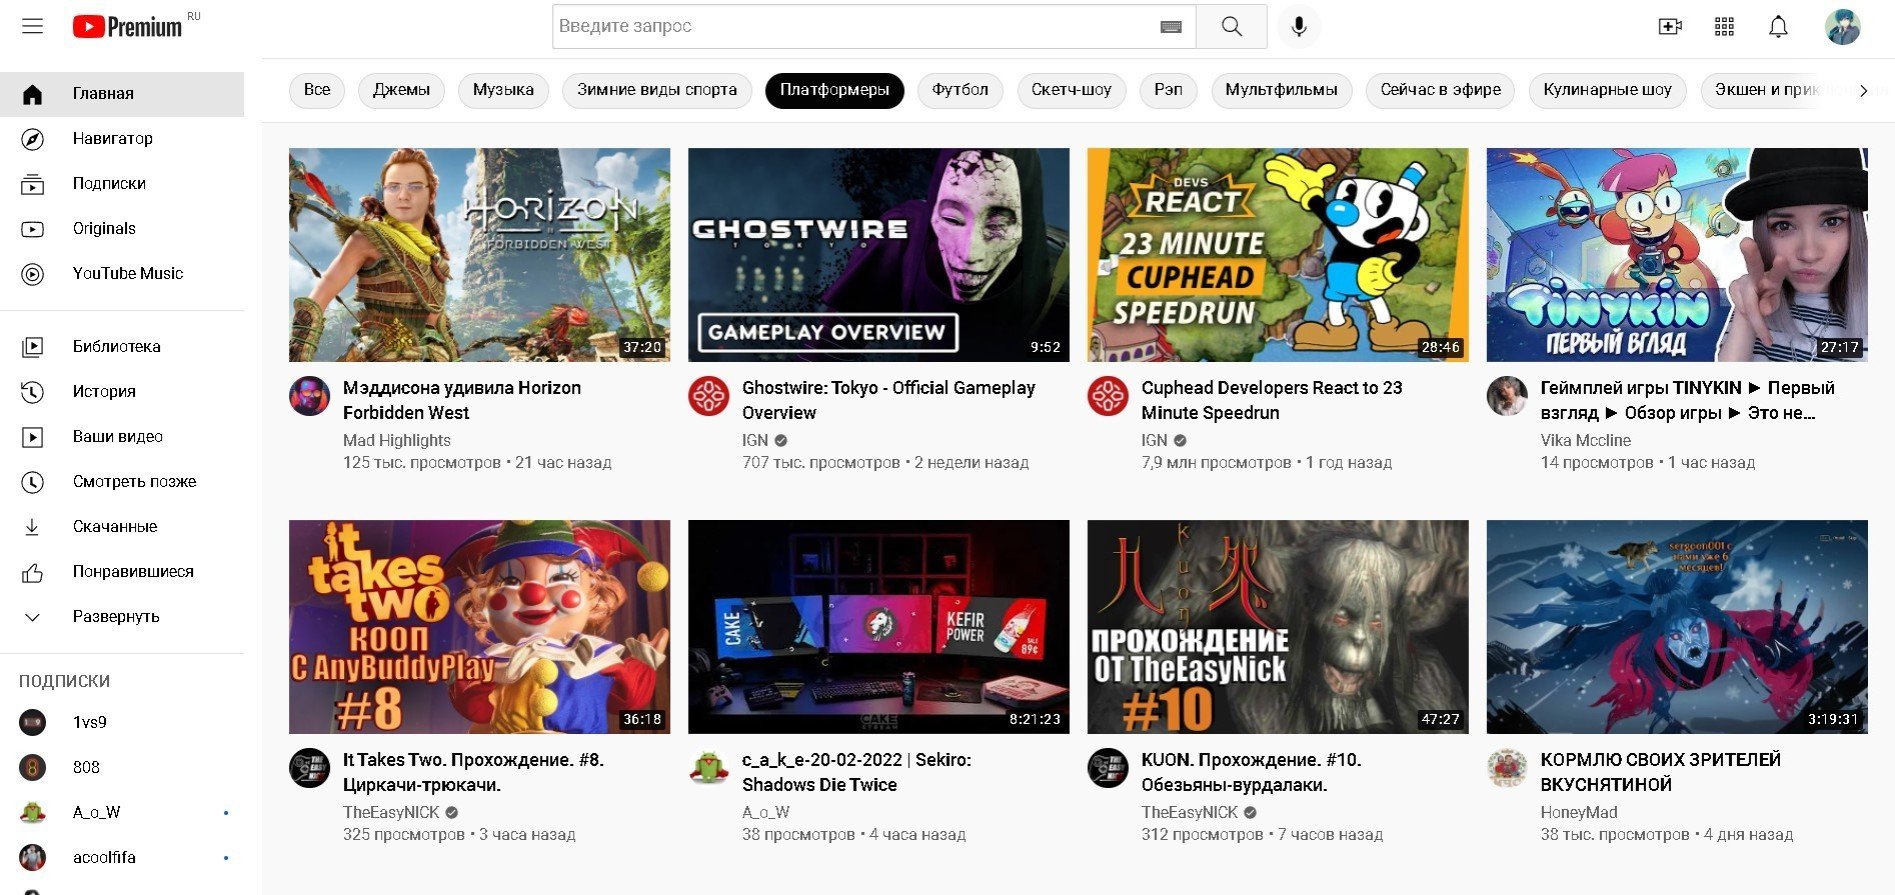 Как выглядели первые версии Twitch YouTube и Steam и как менялся их дизайн